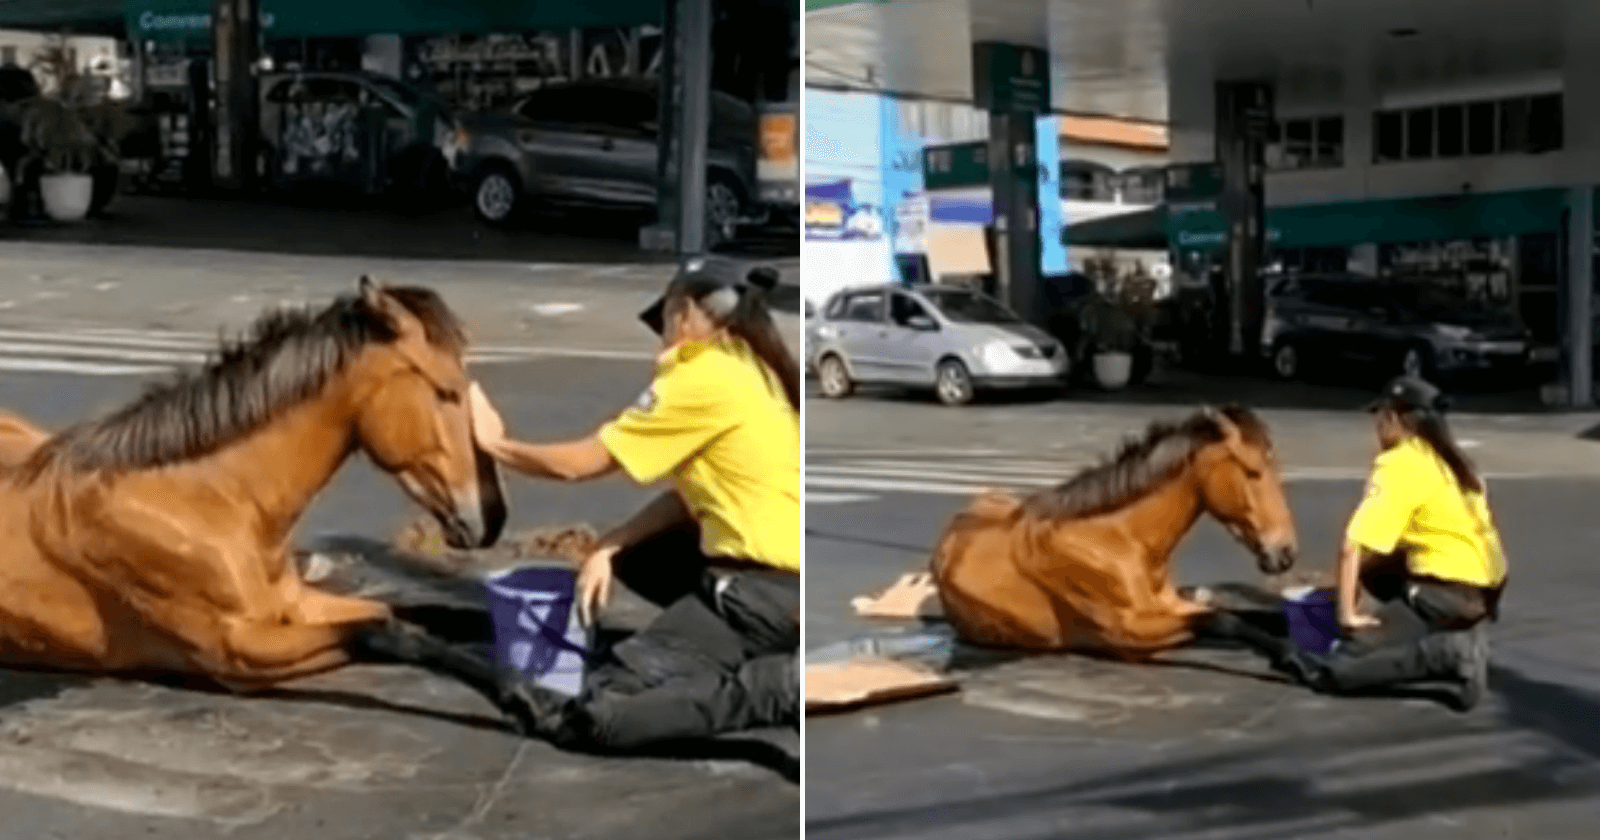 Agente de trânsito passa manhã acalmando égua que sofreu acidente